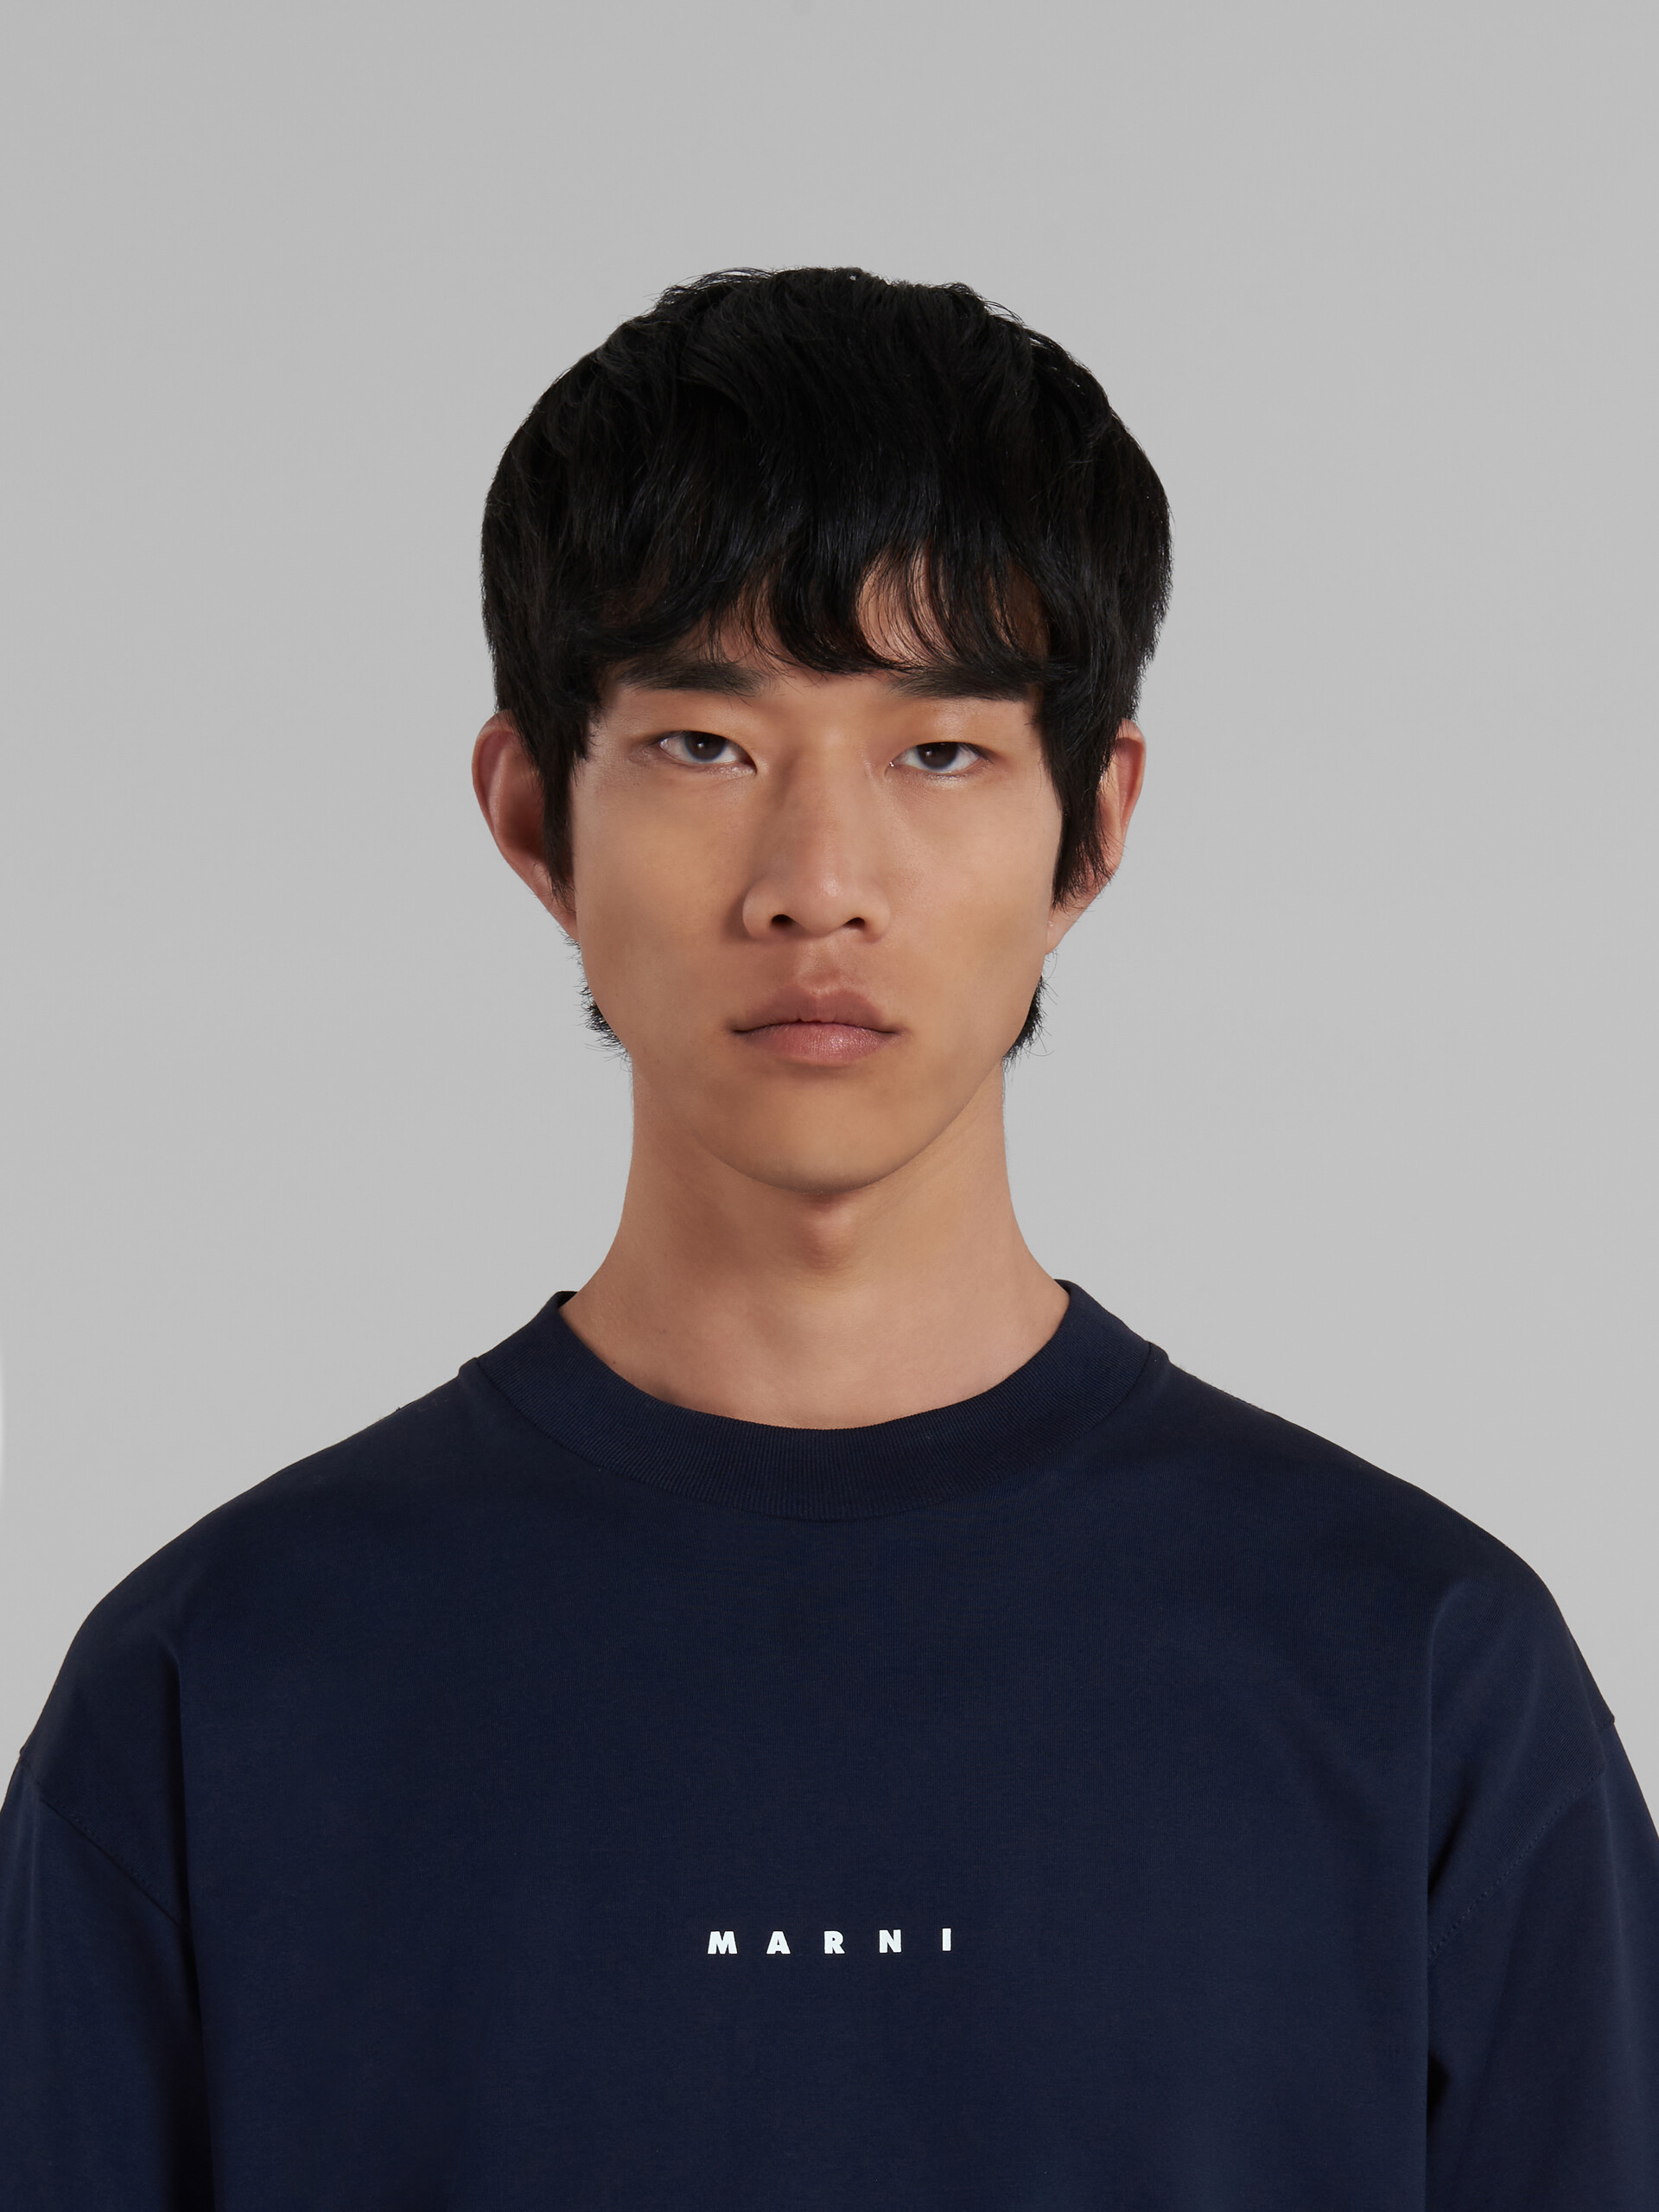 Camiseta con logotipo en jersey azul y negro - Camisetas - Image 4